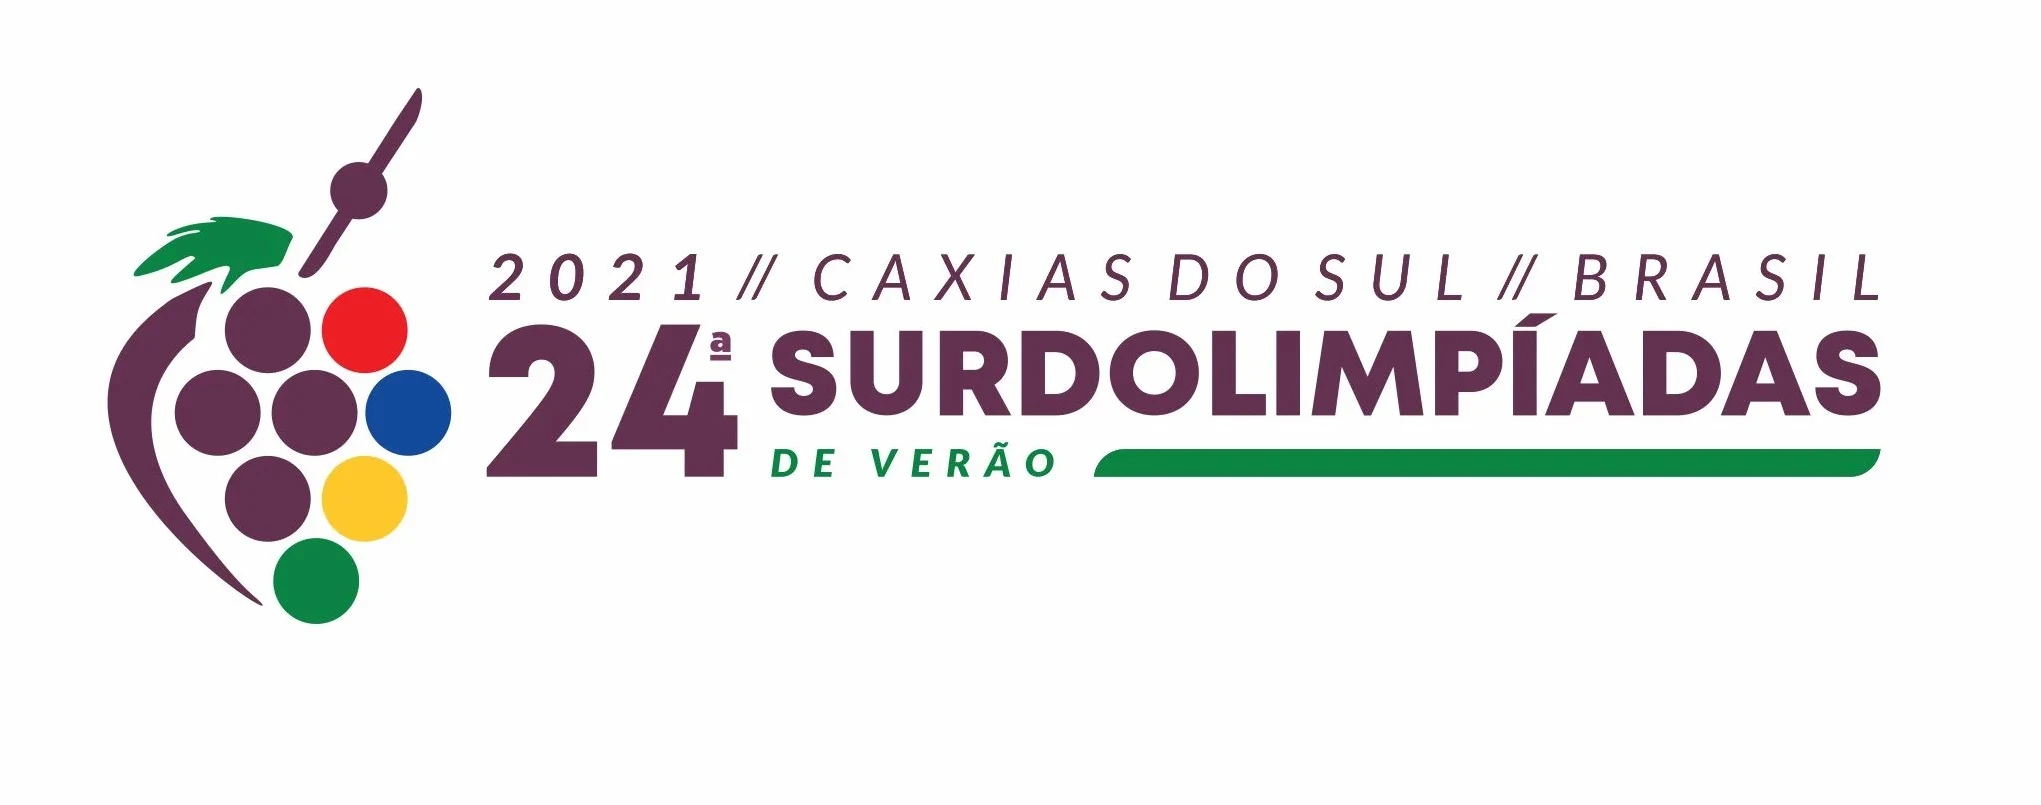 O logo tem a uva, em homenagem à sede, Caxias do Sul.